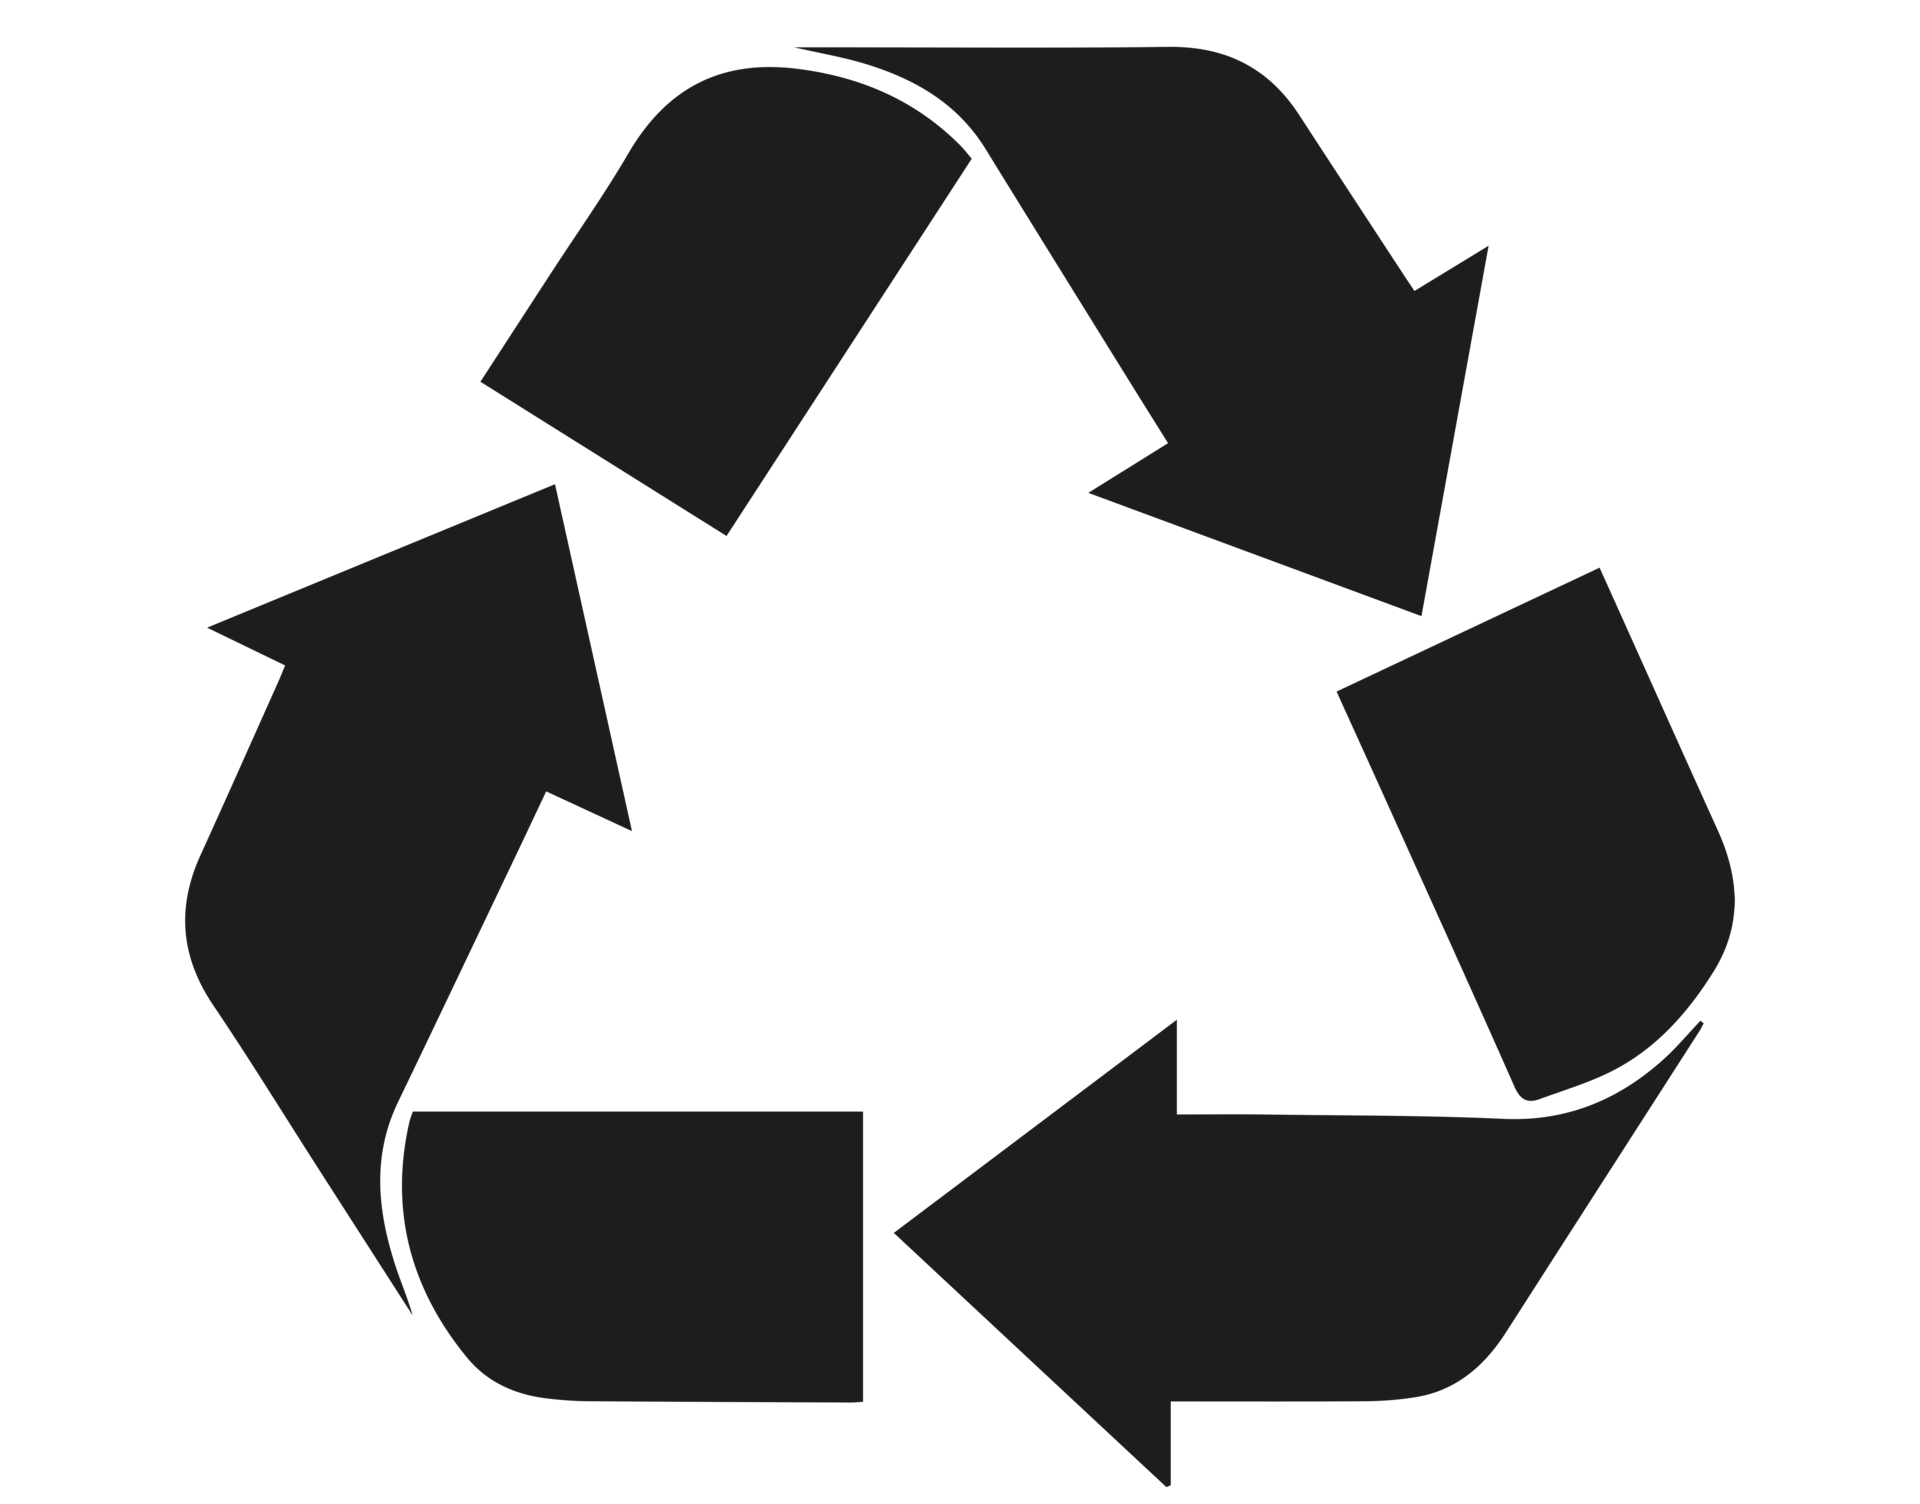 Papel reciclado con fondo transparente de símbolo de reciclaje